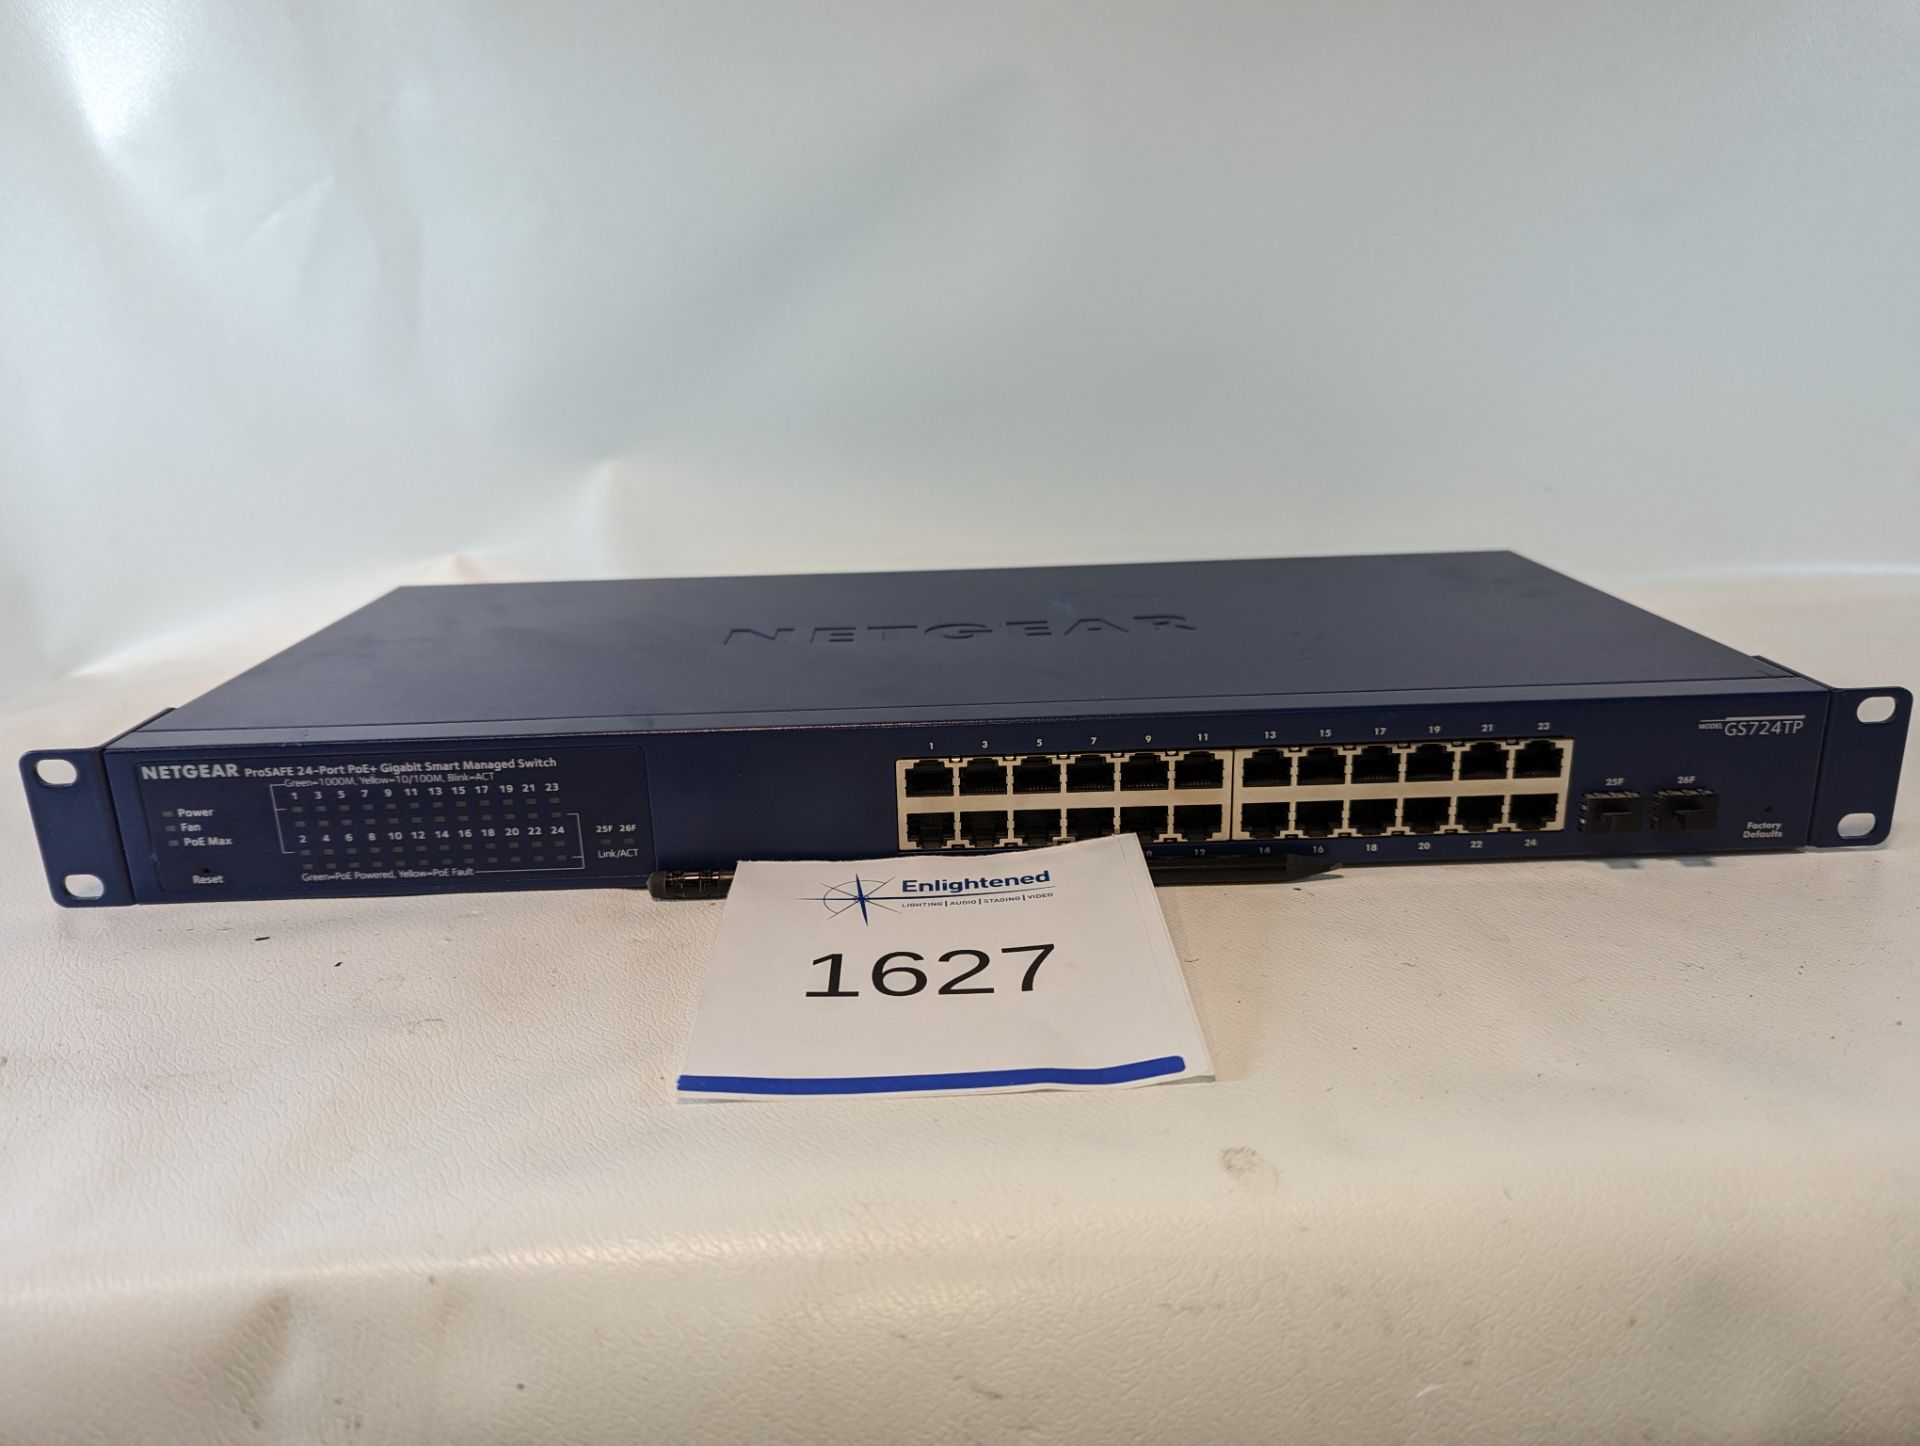 Netgear ProSAFE 24-Port POE+ Switch GS724TPv2